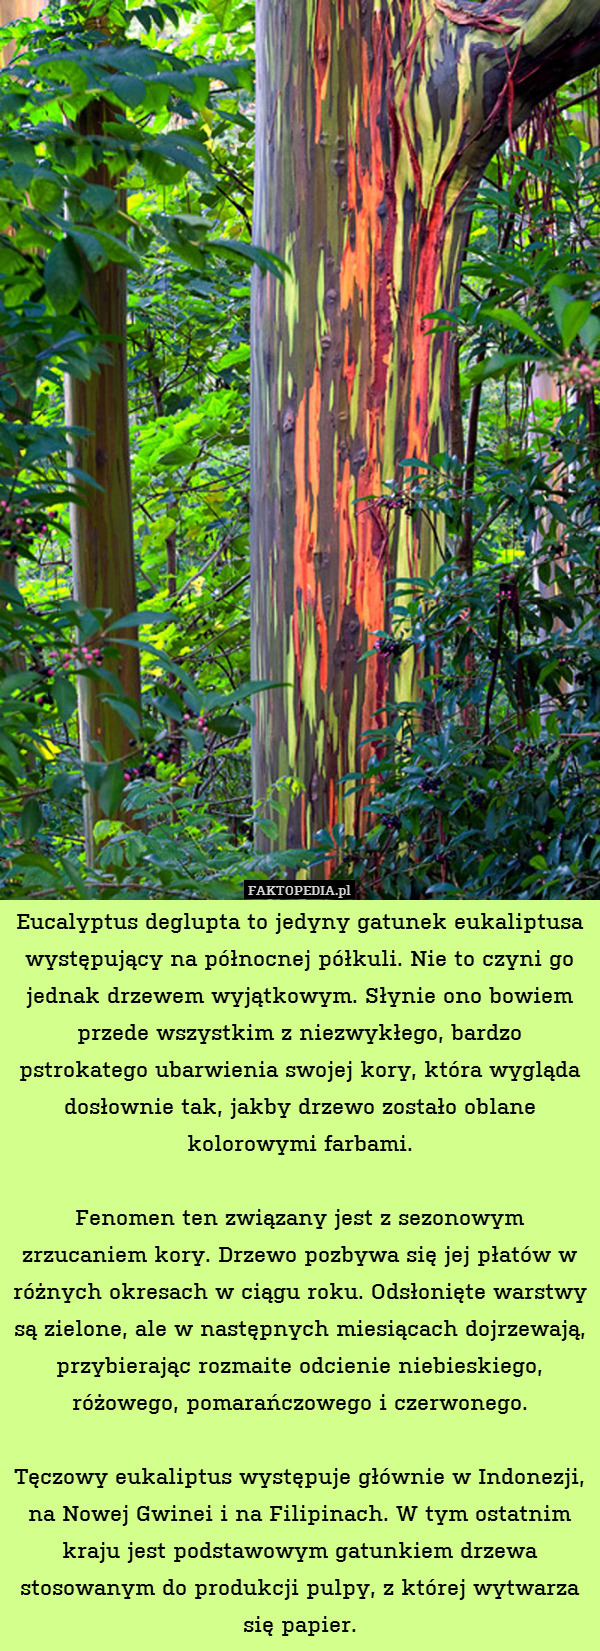 Eucalyptus deglupta to jedyny gatunek eukaliptusa występujący na północnej półkuli. Nie to czyni go jednak drzewem wyjątkowym. Słynie ono bowiem przede wszystkim z niezwykłego, bardzo pstrokatego ubarwienia swojej kory, która wygląda dosłownie tak, jakby drzewo zostało oblane kolorowymi farbami.

Fenomen ten związany jest z sezonowym zrzucaniem kory. Drzewo pozbywa się jej płatów w różnych okresach w ciągu roku. Odsłonięte warstwy są zielone, ale w następnych miesiącach dojrzewają, przybierając rozmaite odcienie niebieskiego, różowego, pomarańczowego i czerwonego.

Tęczowy eukaliptus występuje głównie w Indonezji, na Nowej Gwinei i na Filipinach. W tym ostatnim kraju jest podstawowym gatunkiem drzewa stosowanym do produkcji pulpy, z której wytwarza się papier. 